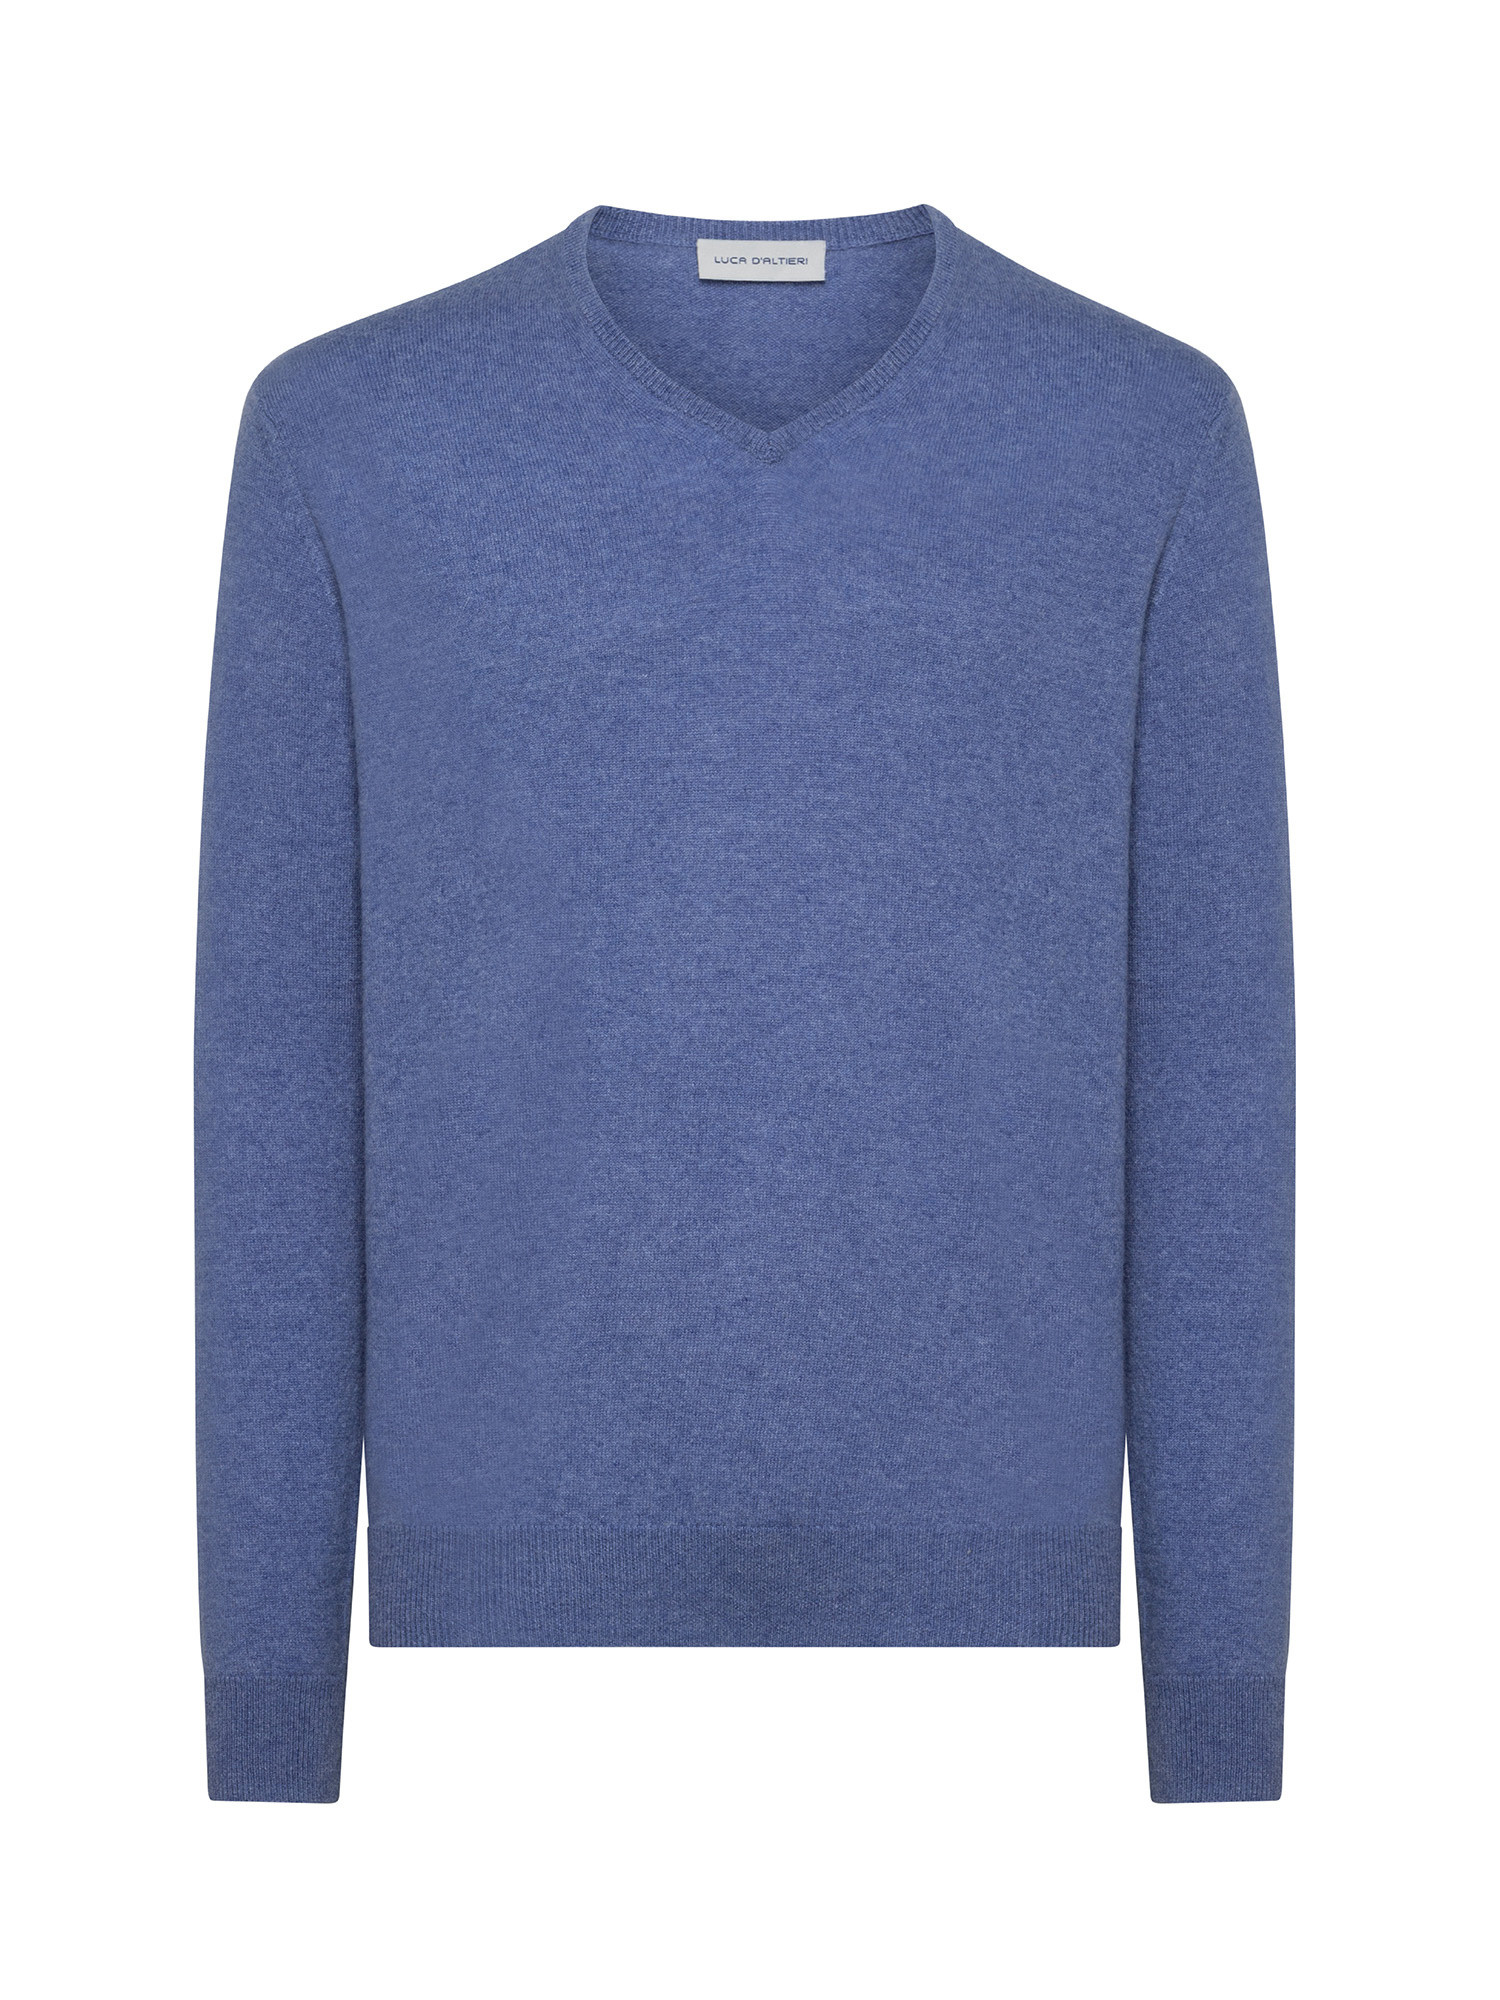 Пуловер с V-образным вырезом из чистого кашемира Luca D'Altieri, бледно-голубой пуловер с v образным вырезом xs бежевый